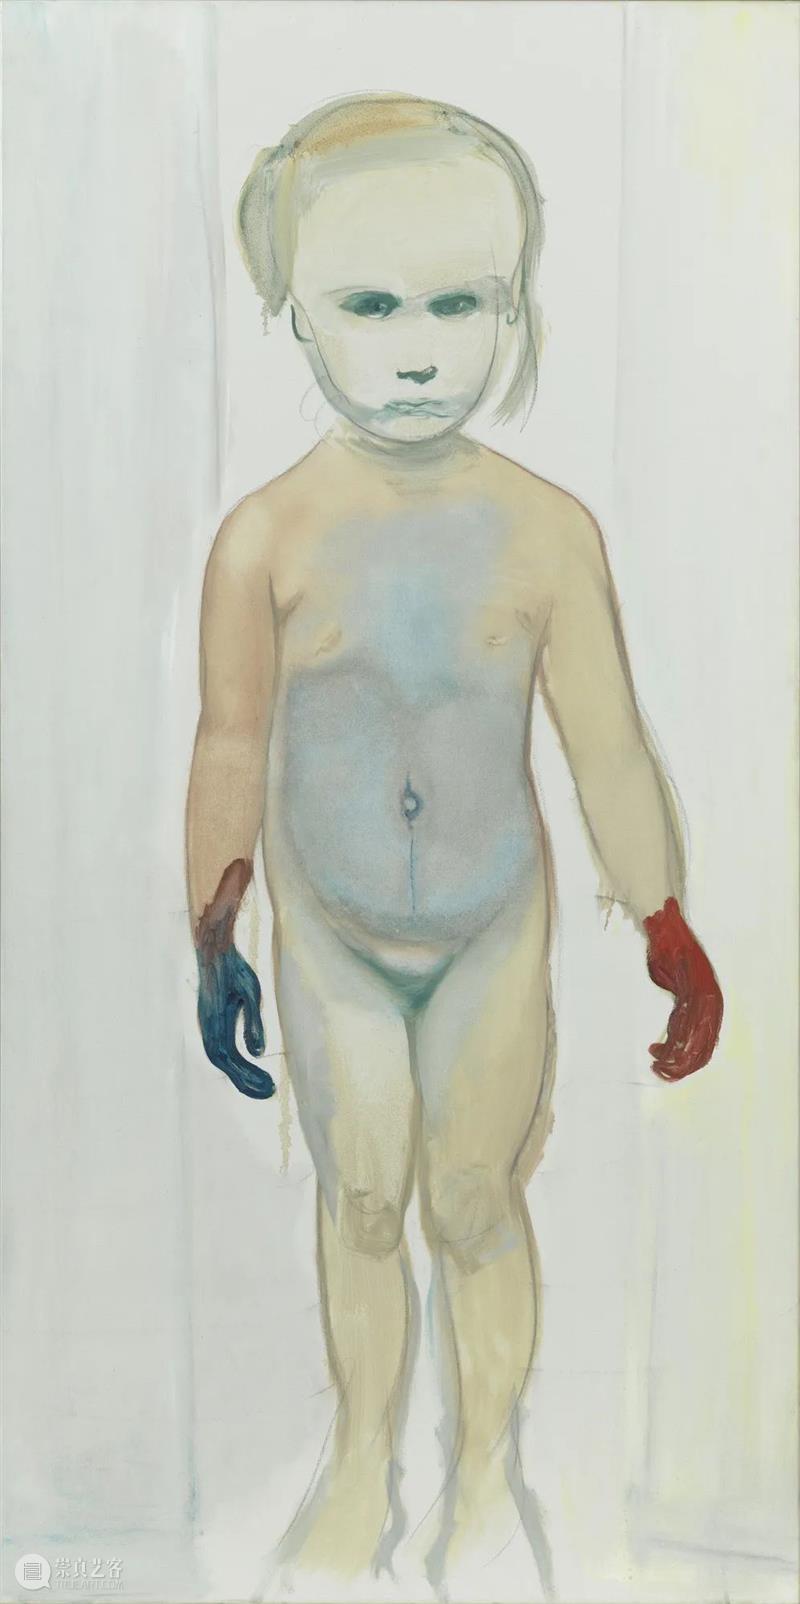 邪恶是平庸的：杜马斯的自我残酷审视 杜马斯 平庸 婴儿 Baba 玛琳 Cox Eindhoven利维坦 艺术 评论家 作品 崇真艺客